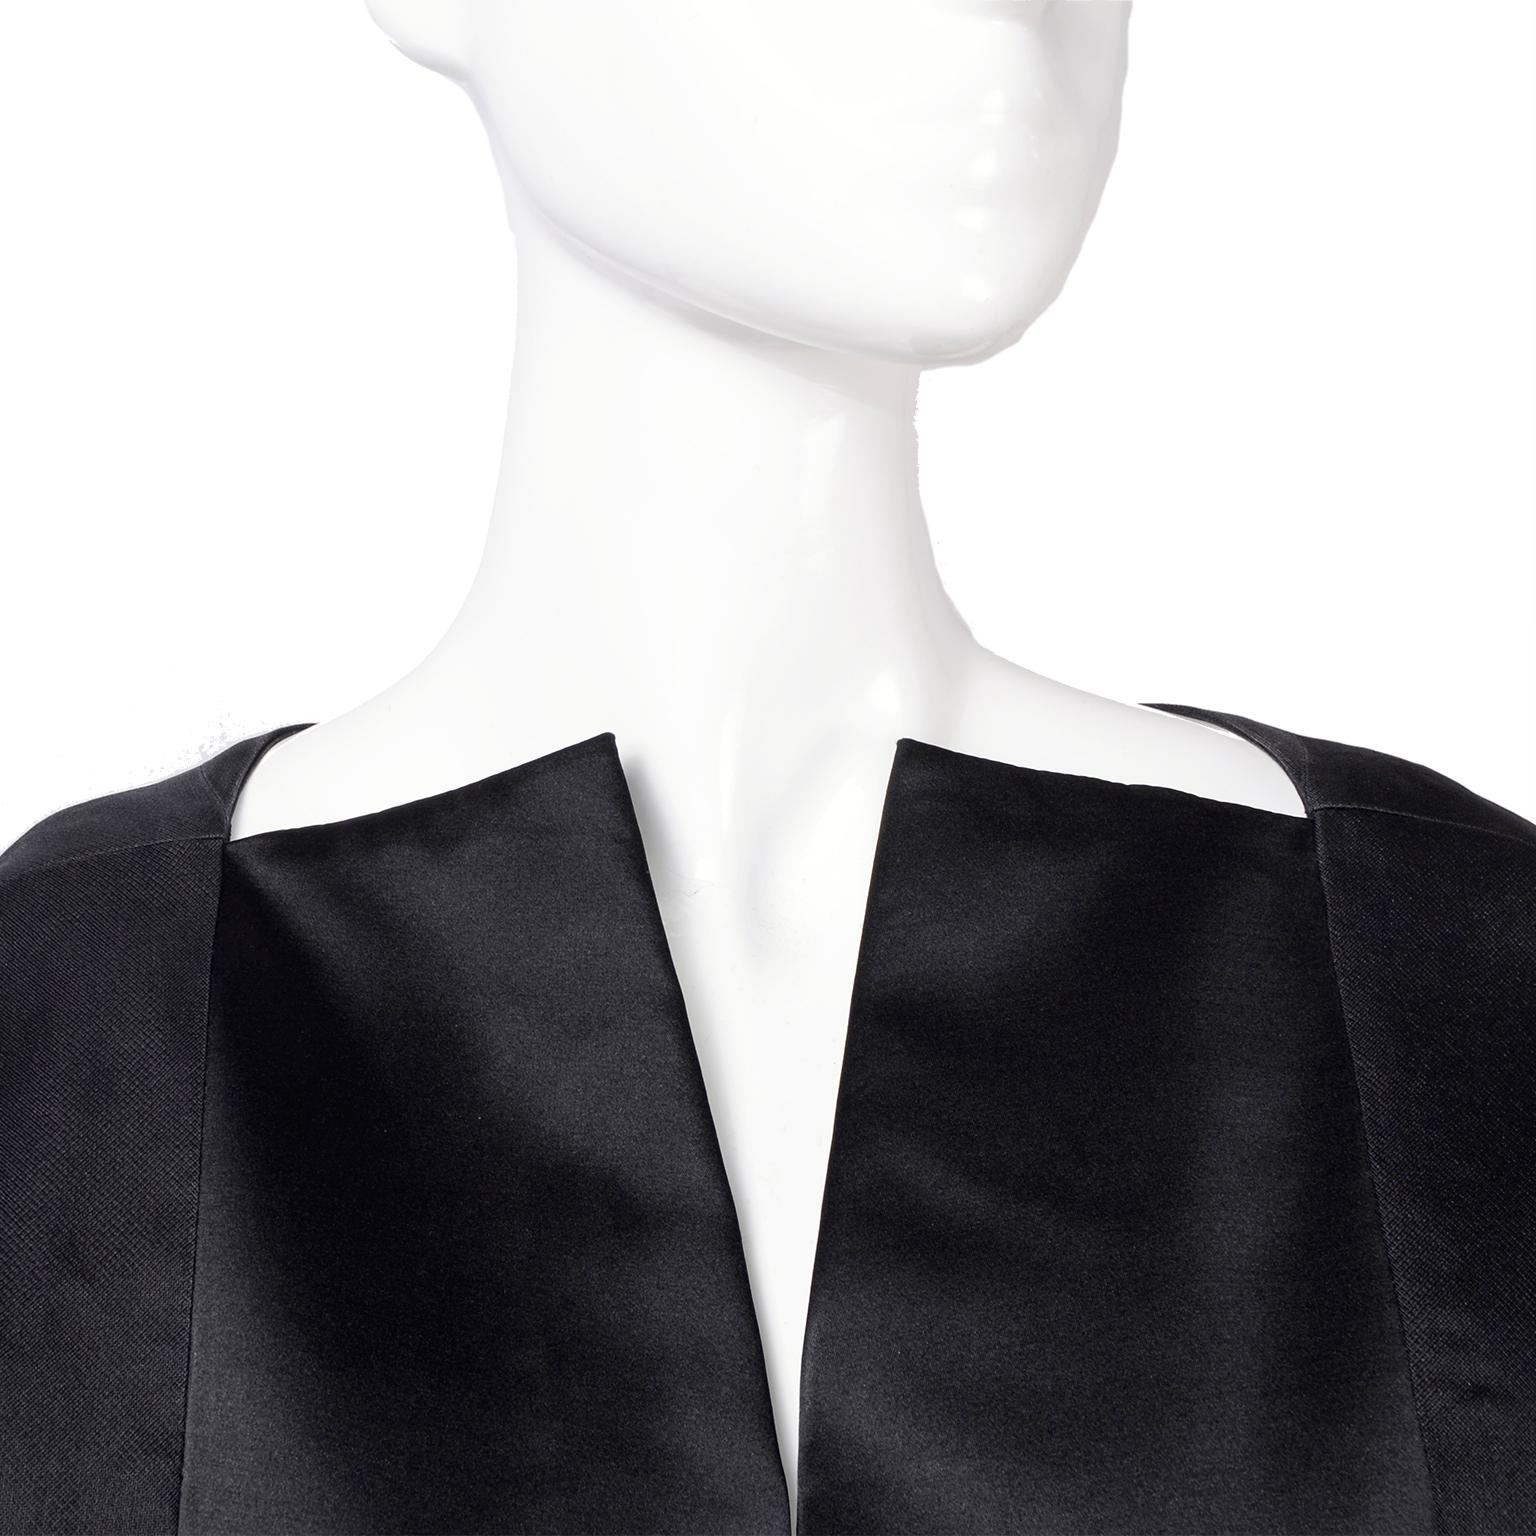 Women's Vintage Black Geoffrey Beene Dress W/ Detailed Origami Folds & Styling